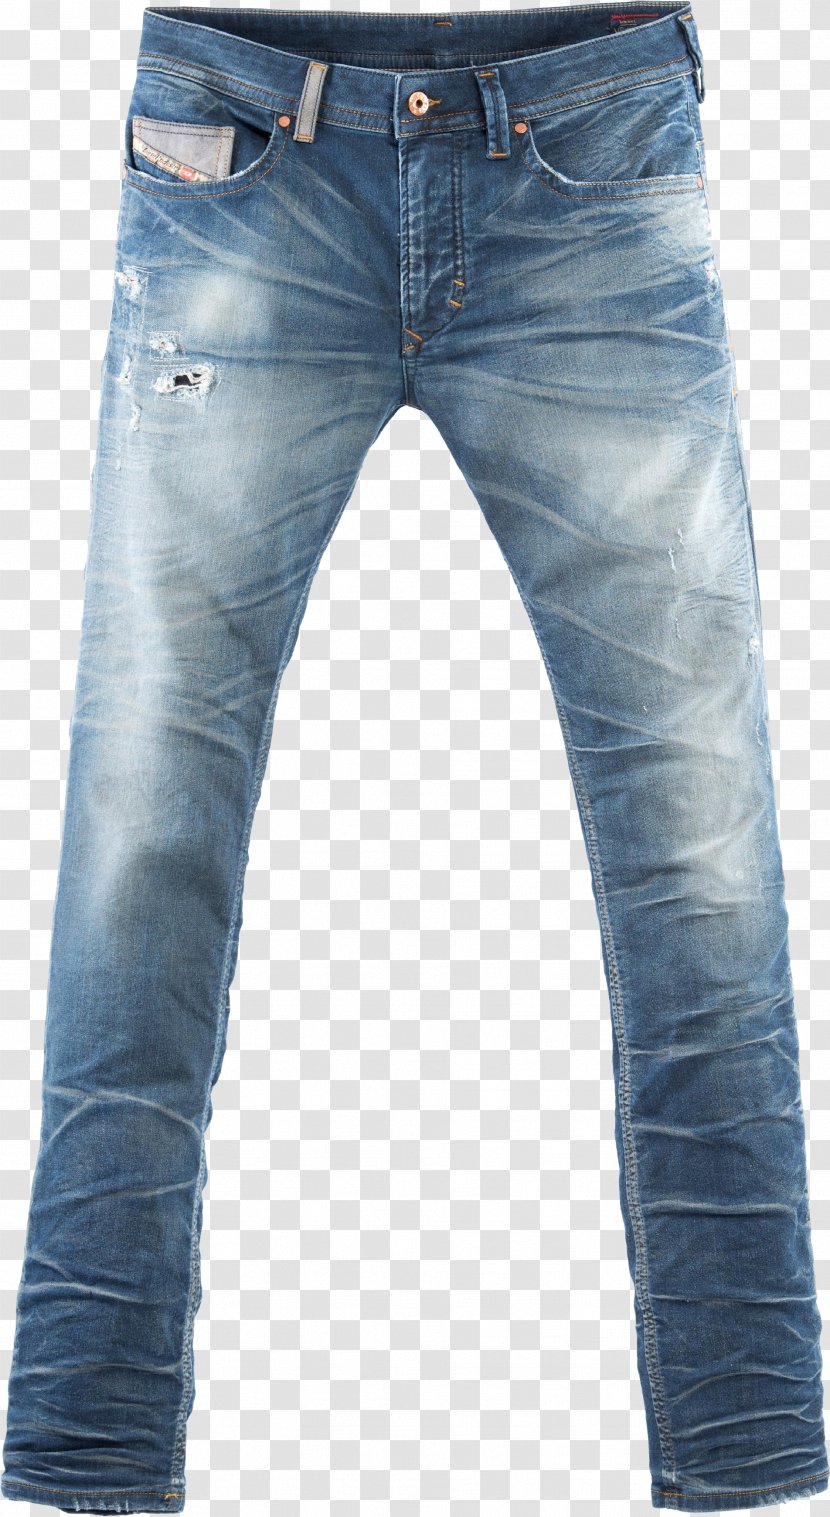 Trousers T-shirt Clothing Jeans Fashion - Shop - Men's PNG Image Transparent PNG